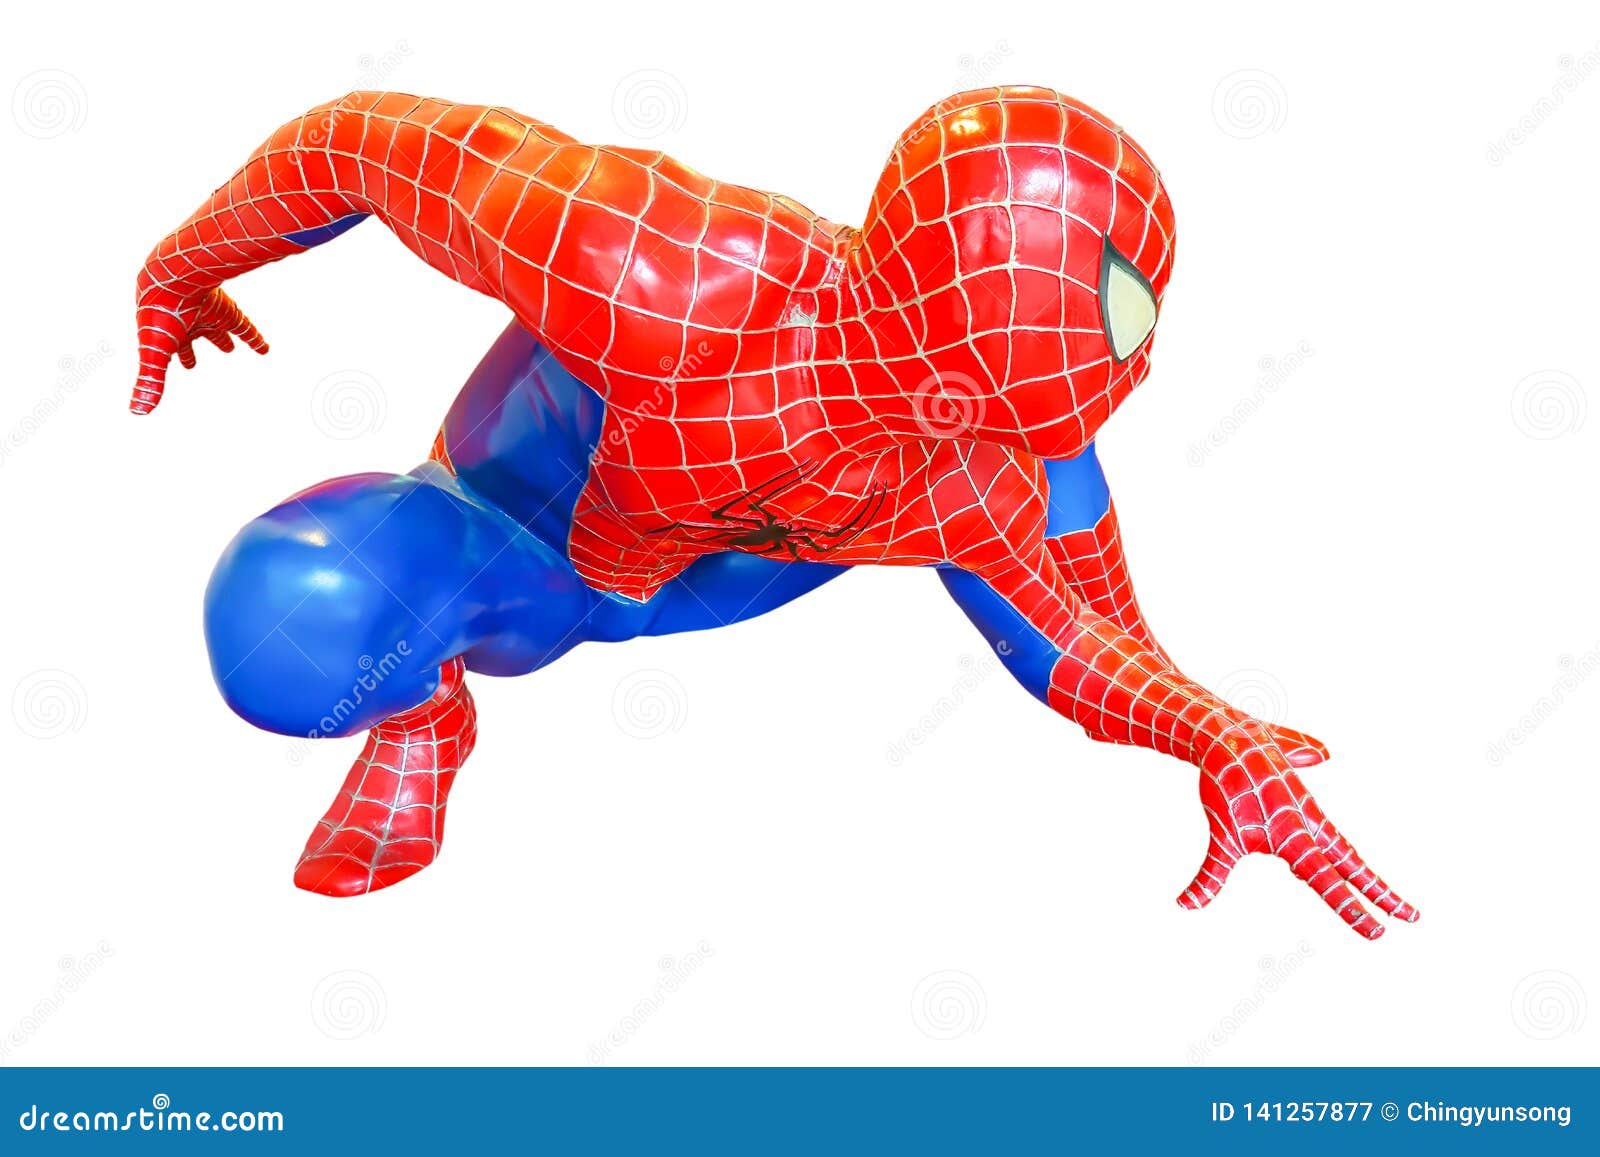 Spider-Man Model Sit Down is Isolated on White Background of... - Ngày nay, mô hình Spider-Man trên nền trắng đã trở thành một trong những hình ảnh được yêu thích của các fan hâm mộ của siêu anh hùng này. Hãy cùng chiêm ngưỡng trên những nền trắng tinh khôi và sang trọng.